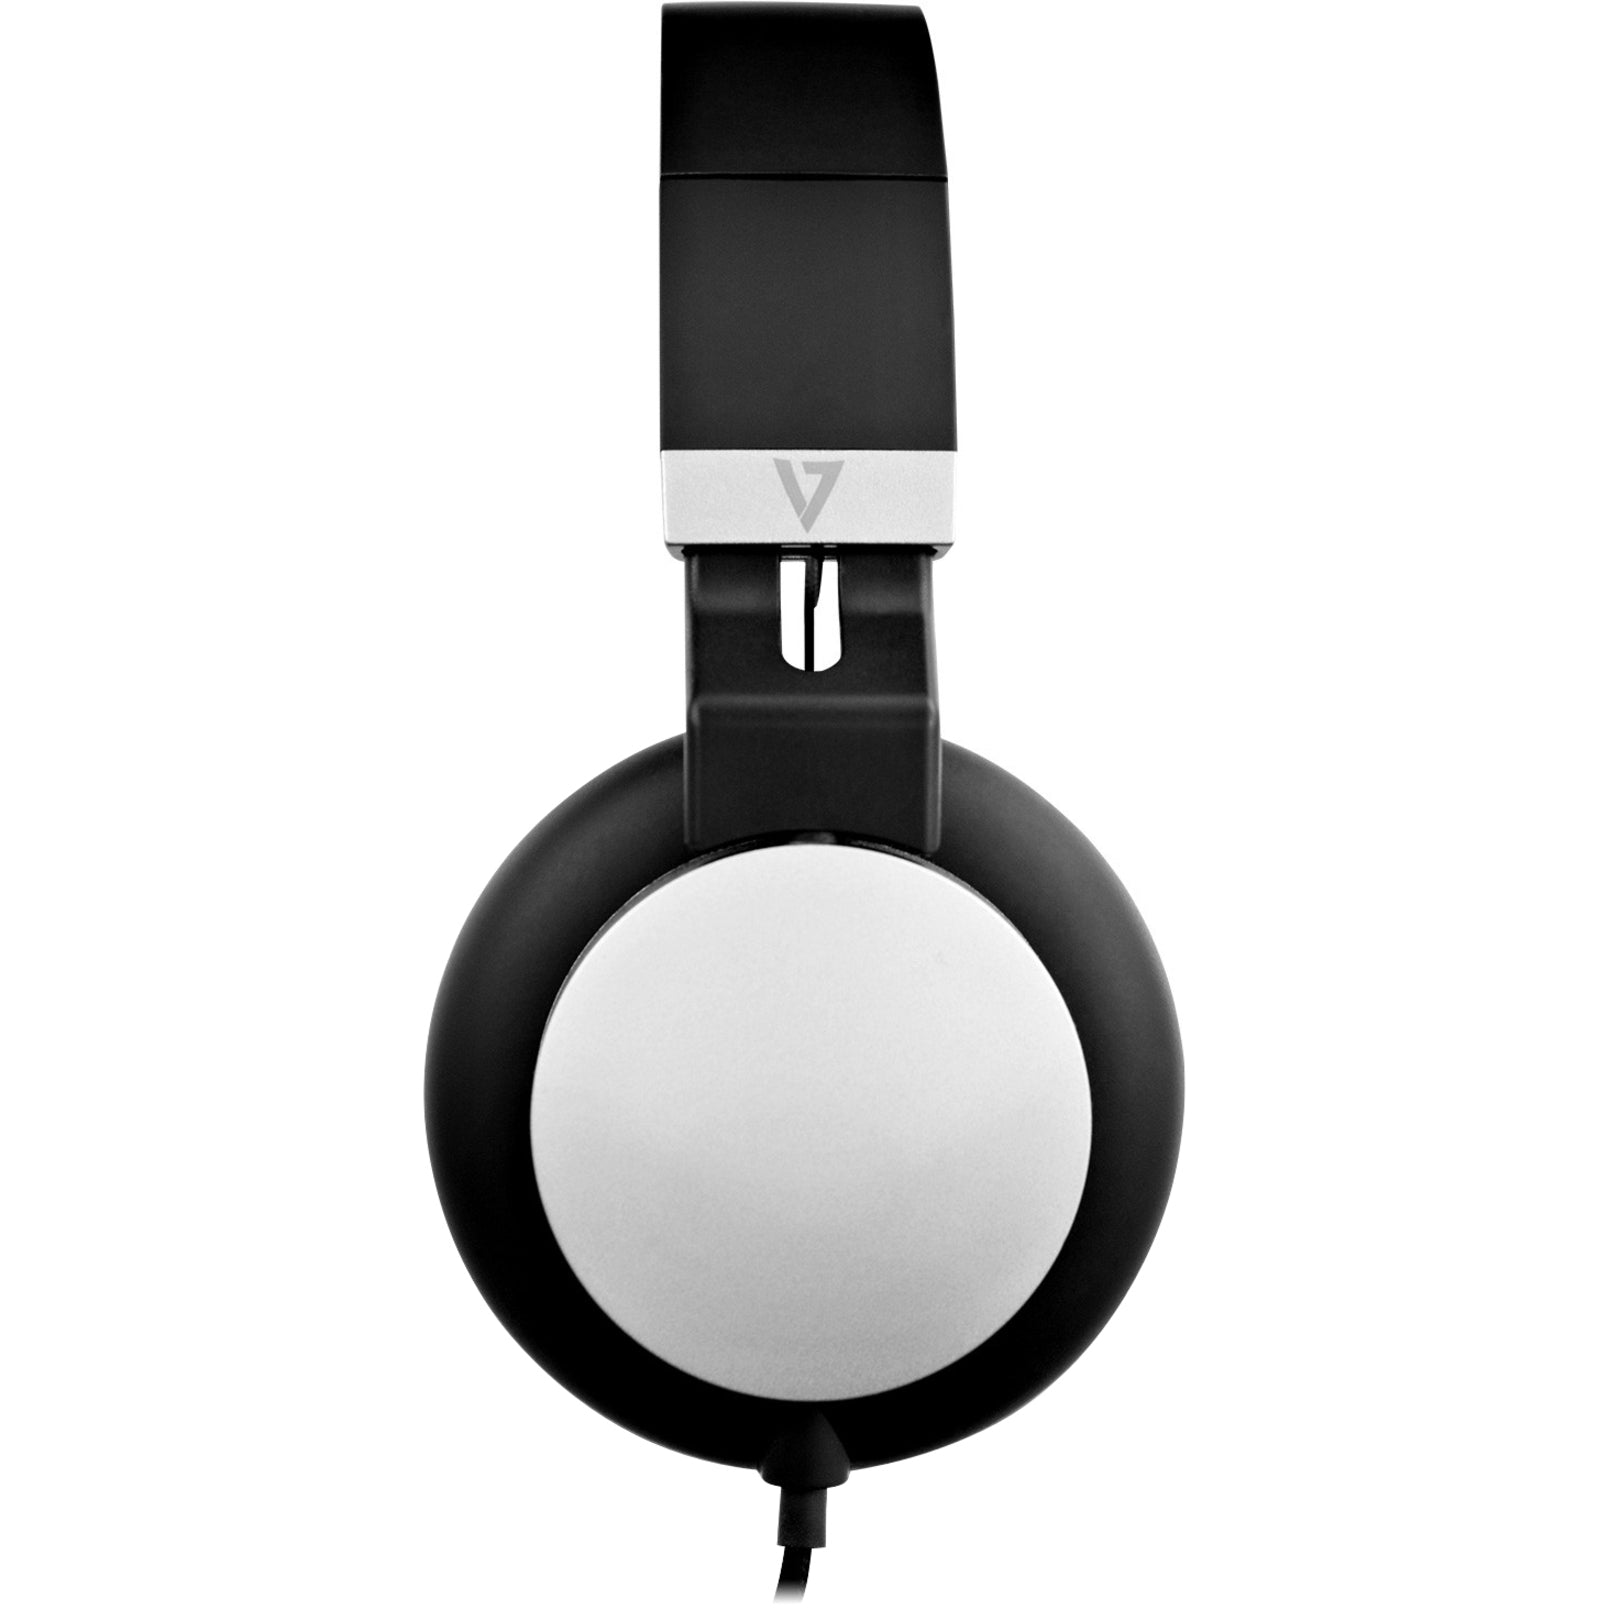 V7 HA601-3NP Lightweight On-Ear Headphones, Black/Silver, Noise Canceling, 2 Year Warranty